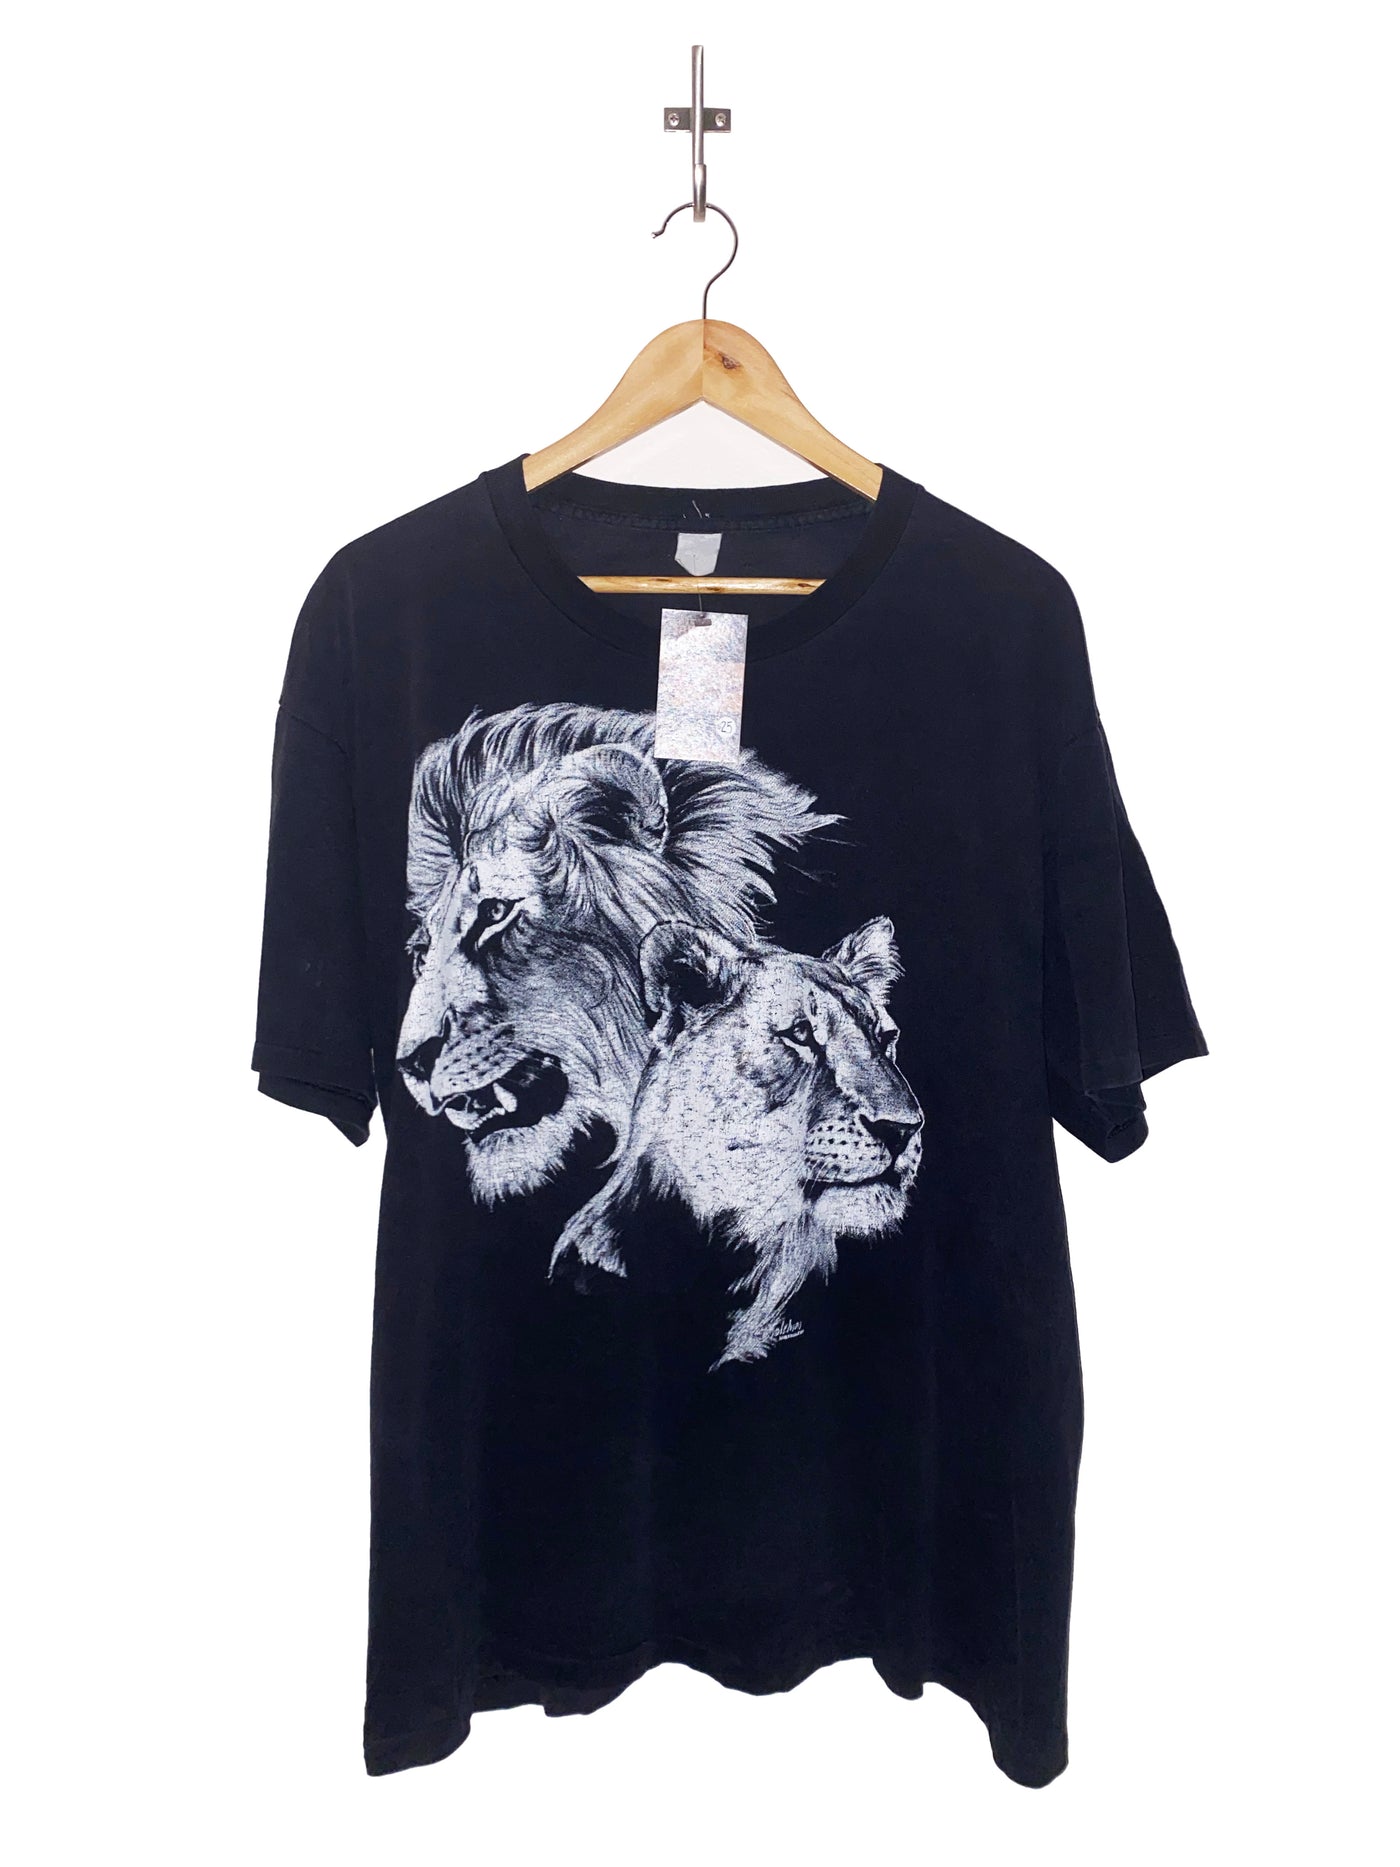 Vintage 1994 Lion Graphic T-Shirt